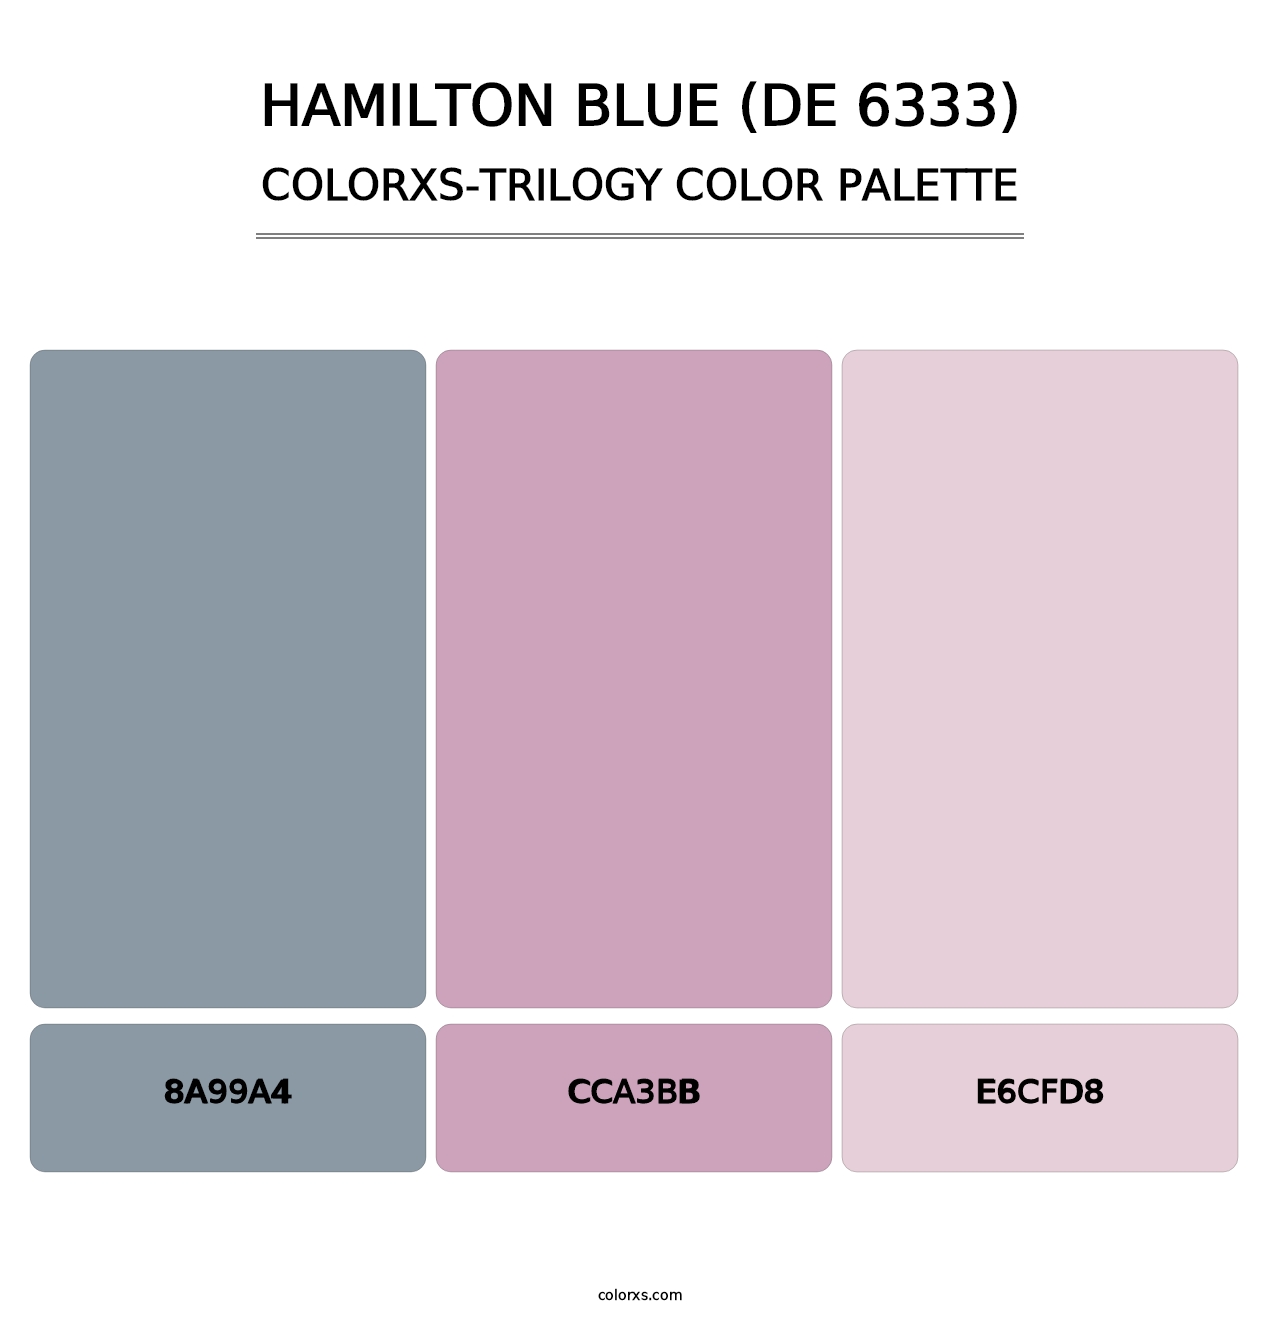 Hamilton Blue (DE 6333) - Colorxs Trilogy Palette